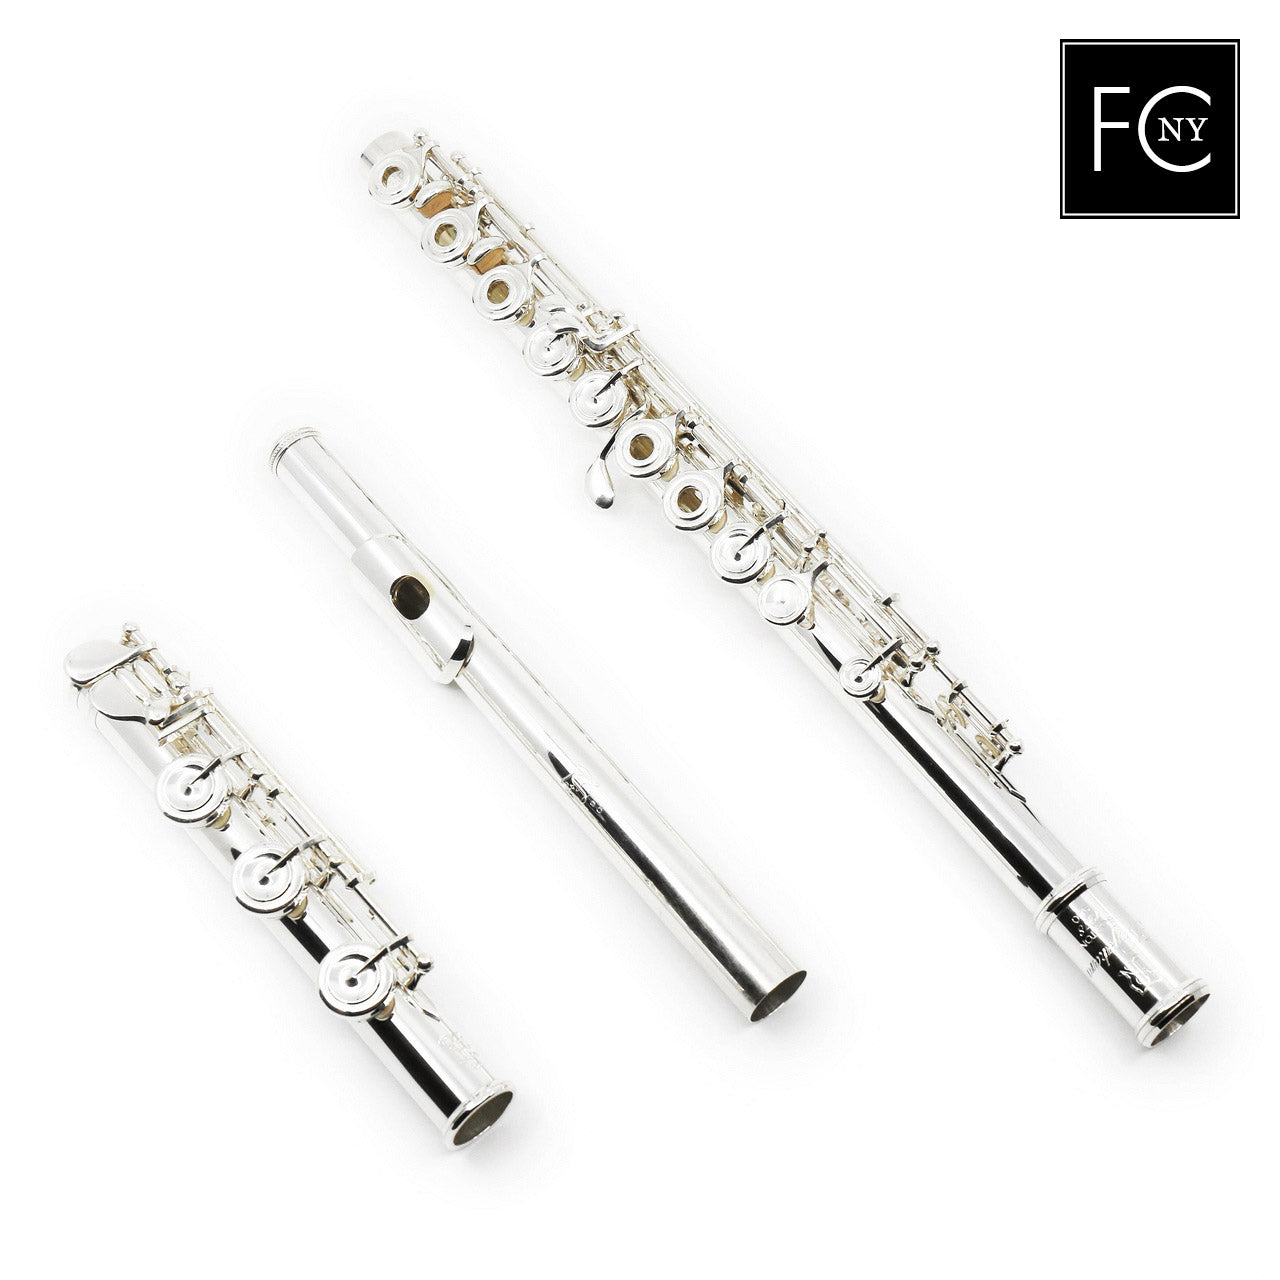 Nagahara Handmade Custom 950 Silver Flute New – Flute Center